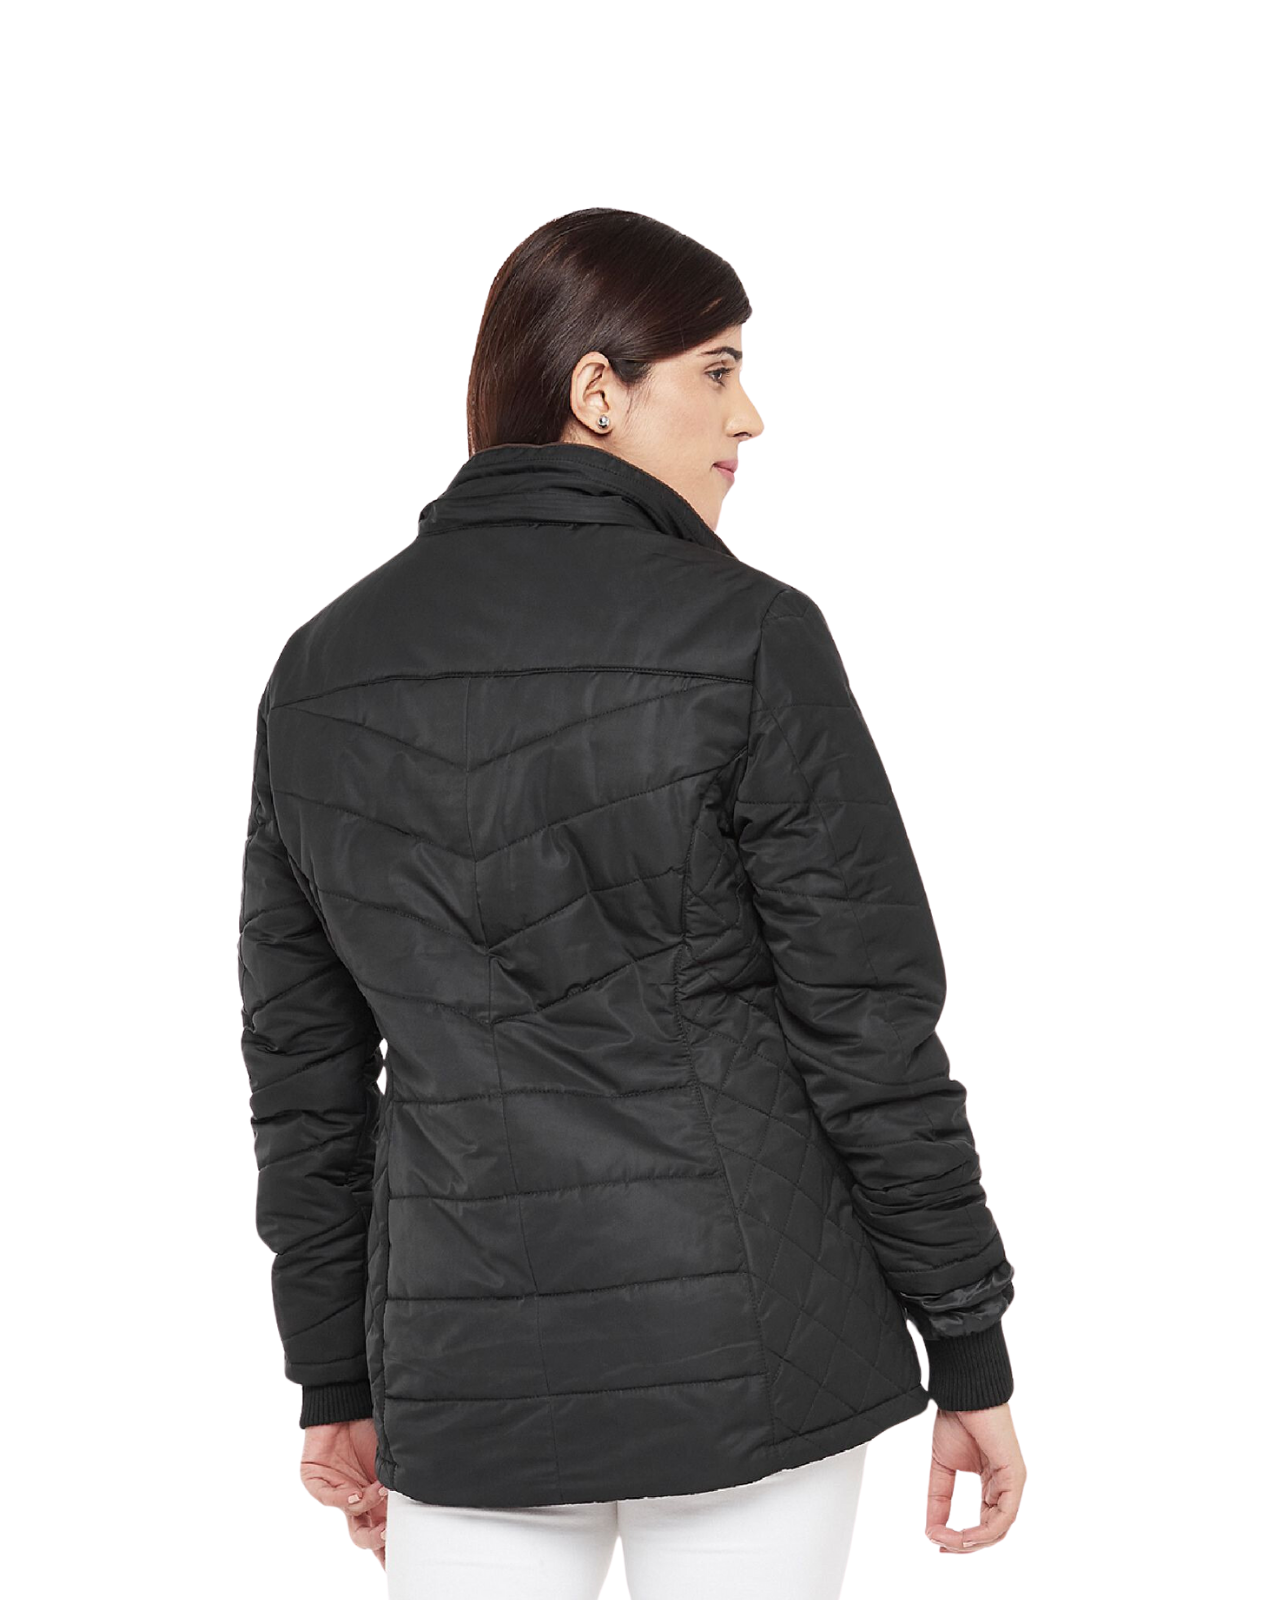 Waterproof Fleece Lined Jacket For Women